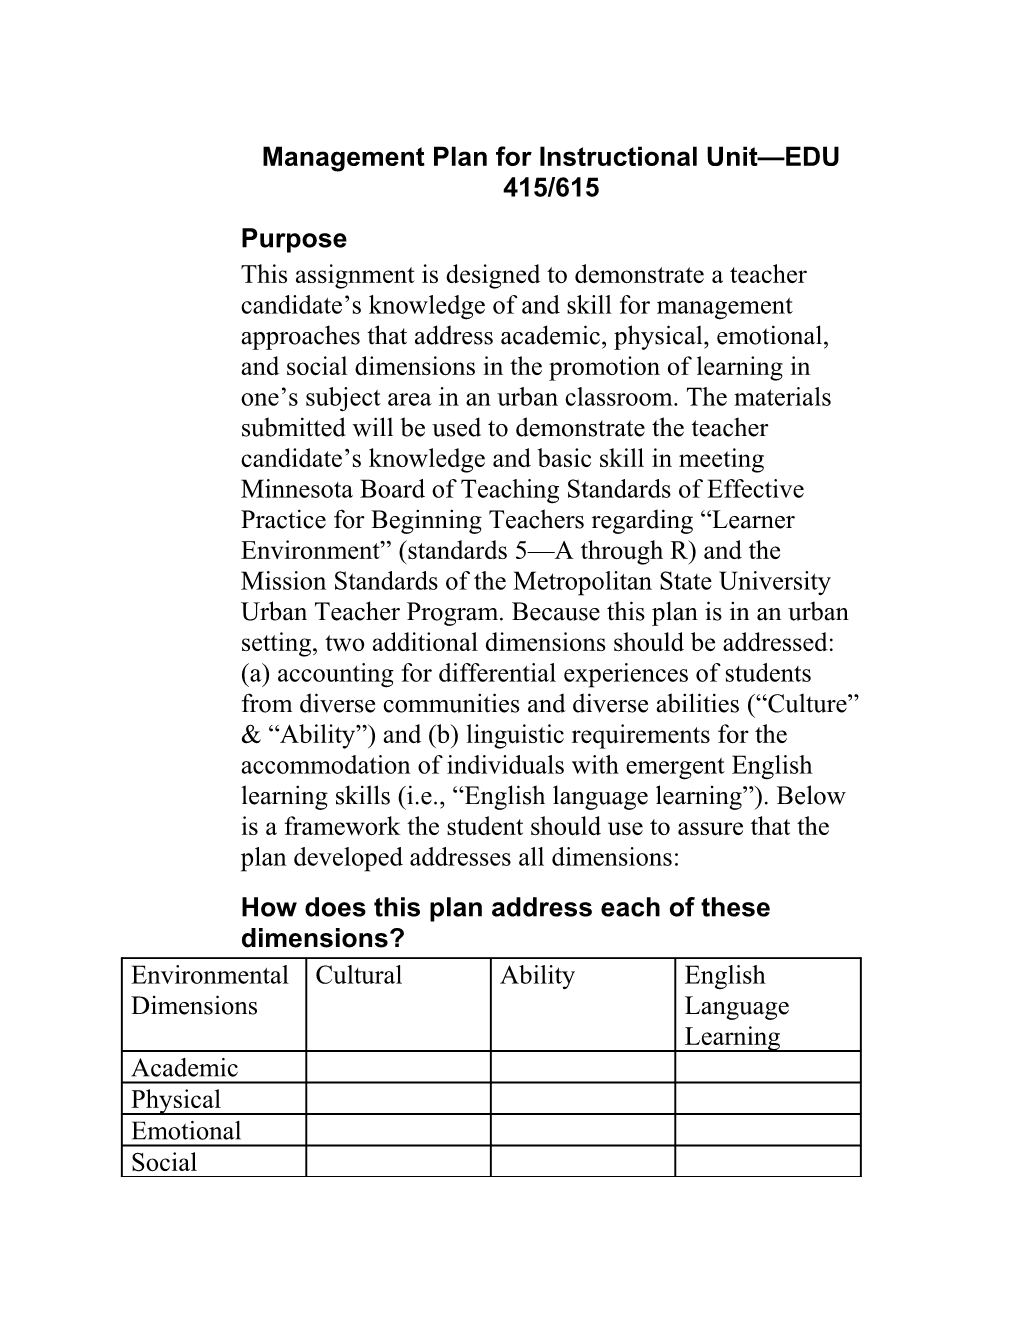 Management Plan for Instructional Unit EDU 415